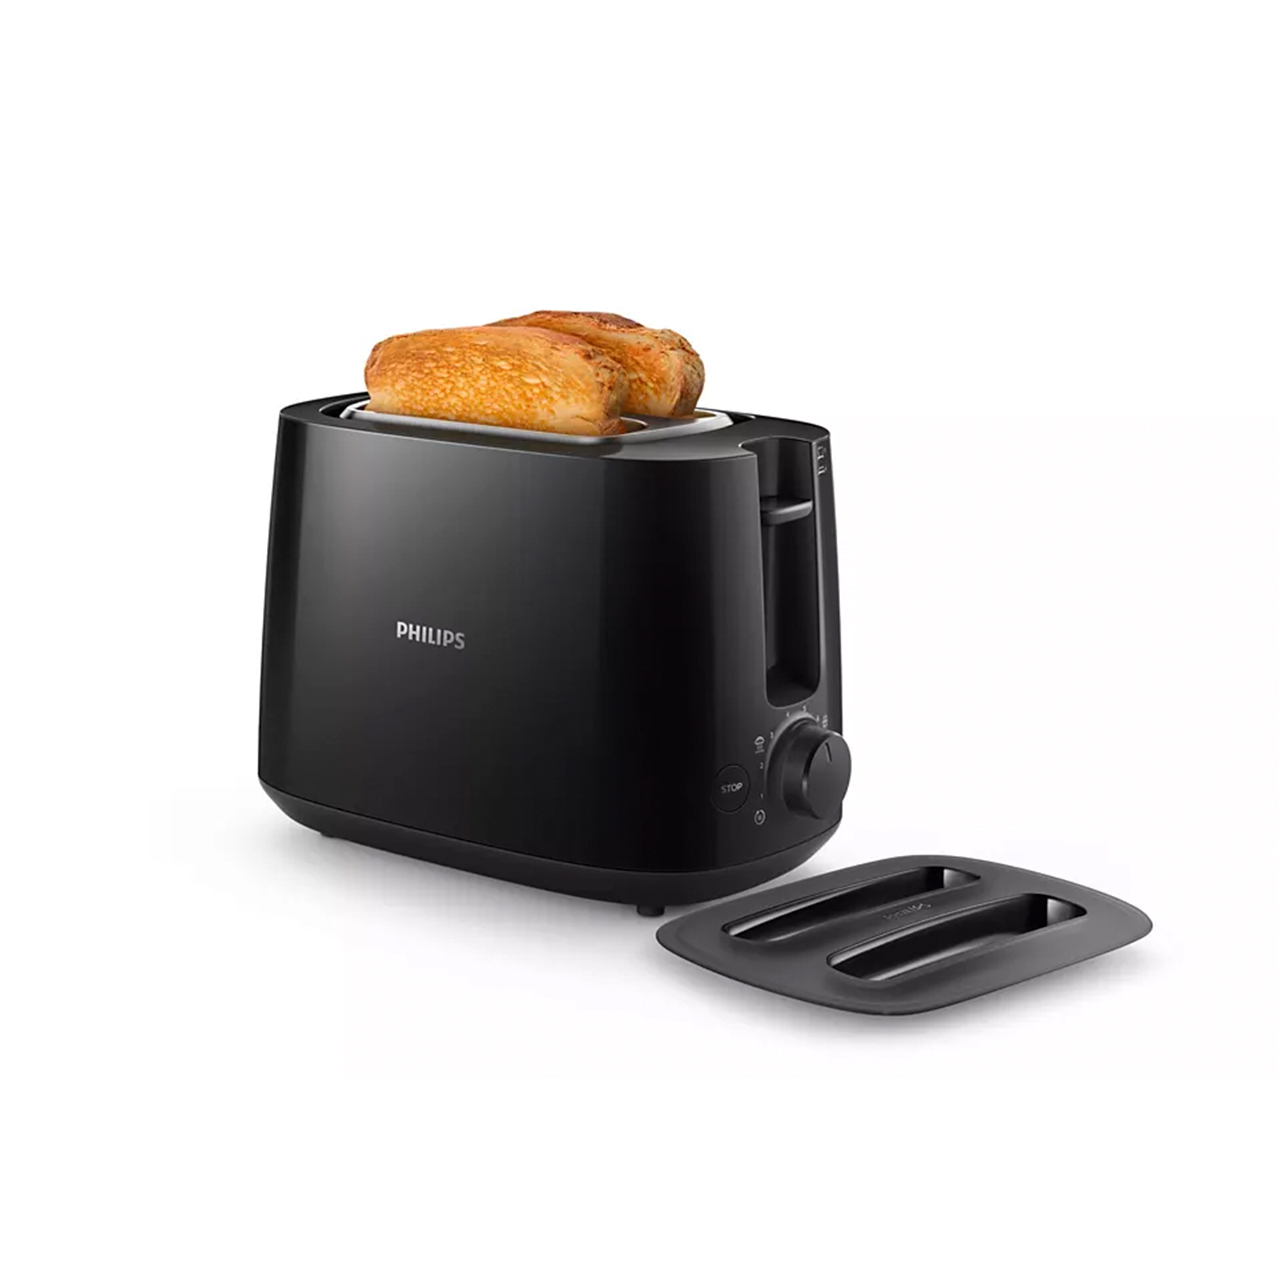 Phillips 2 Slice Toaster HD-2582/90